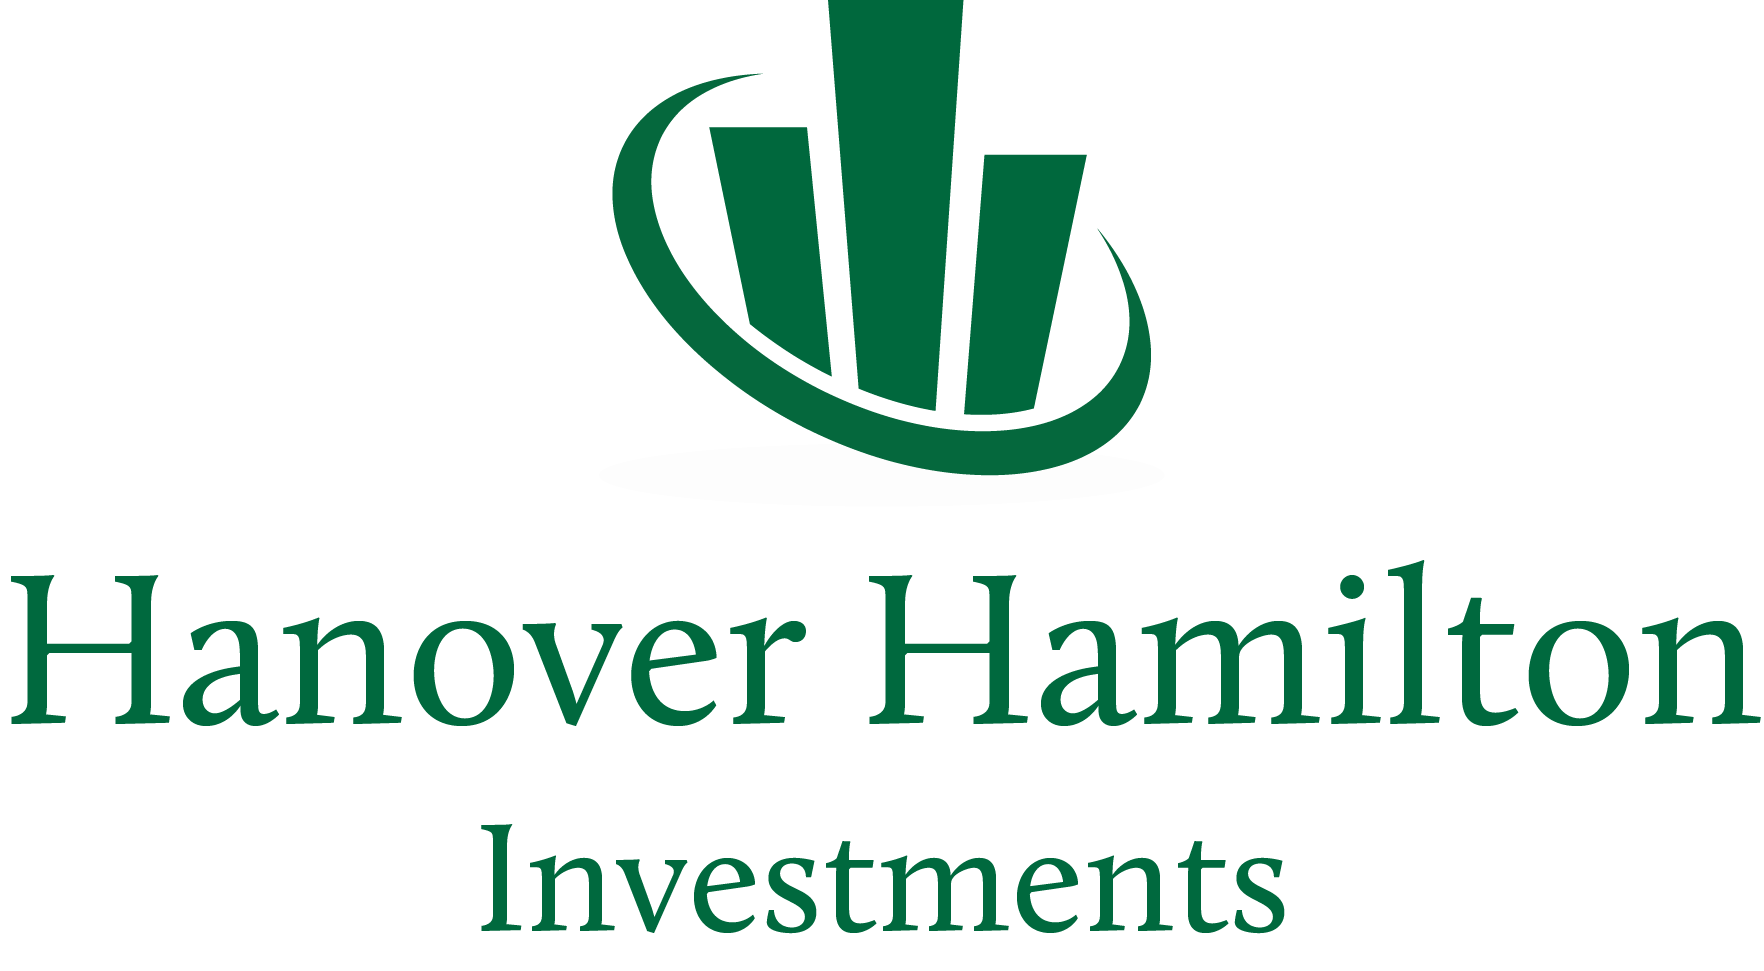 Hanover Hamilton Investments